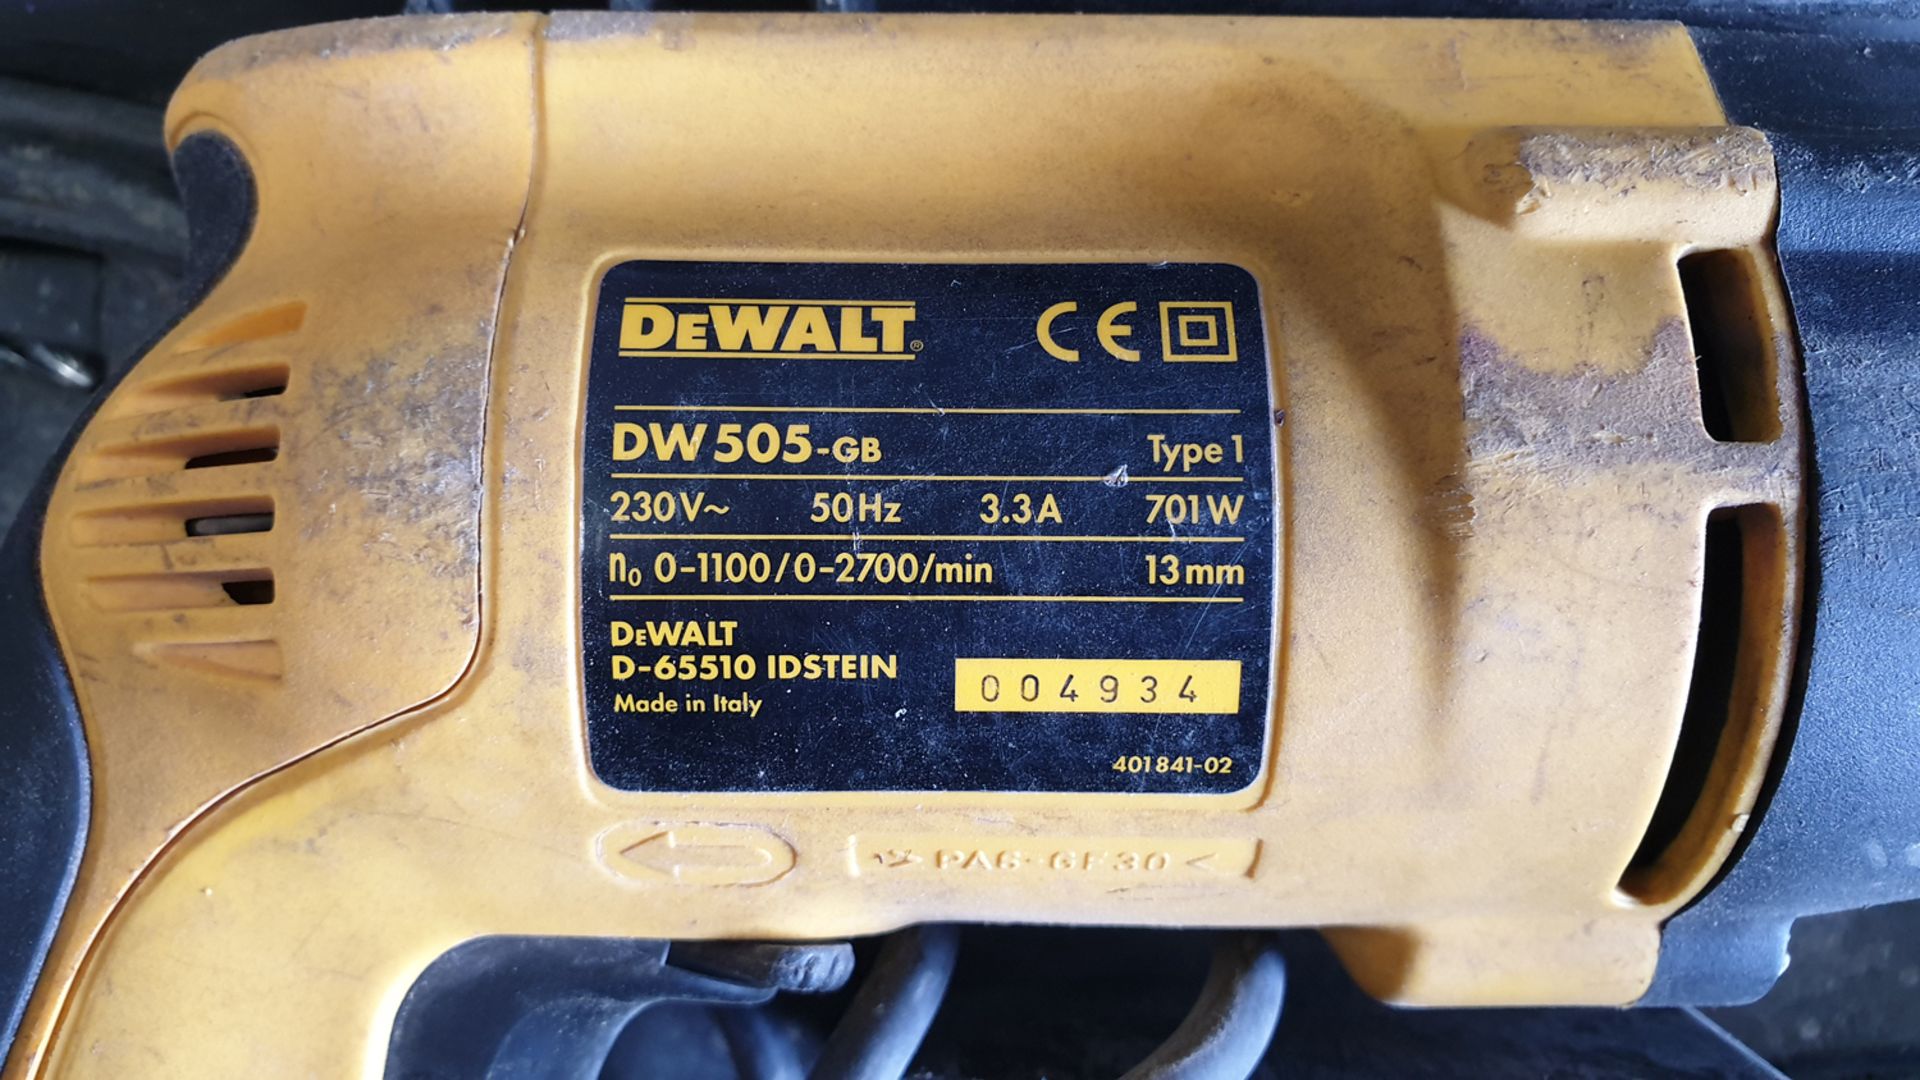 DeWALT DW505-GB Drill. 230V. In Box. - Image 3 of 3